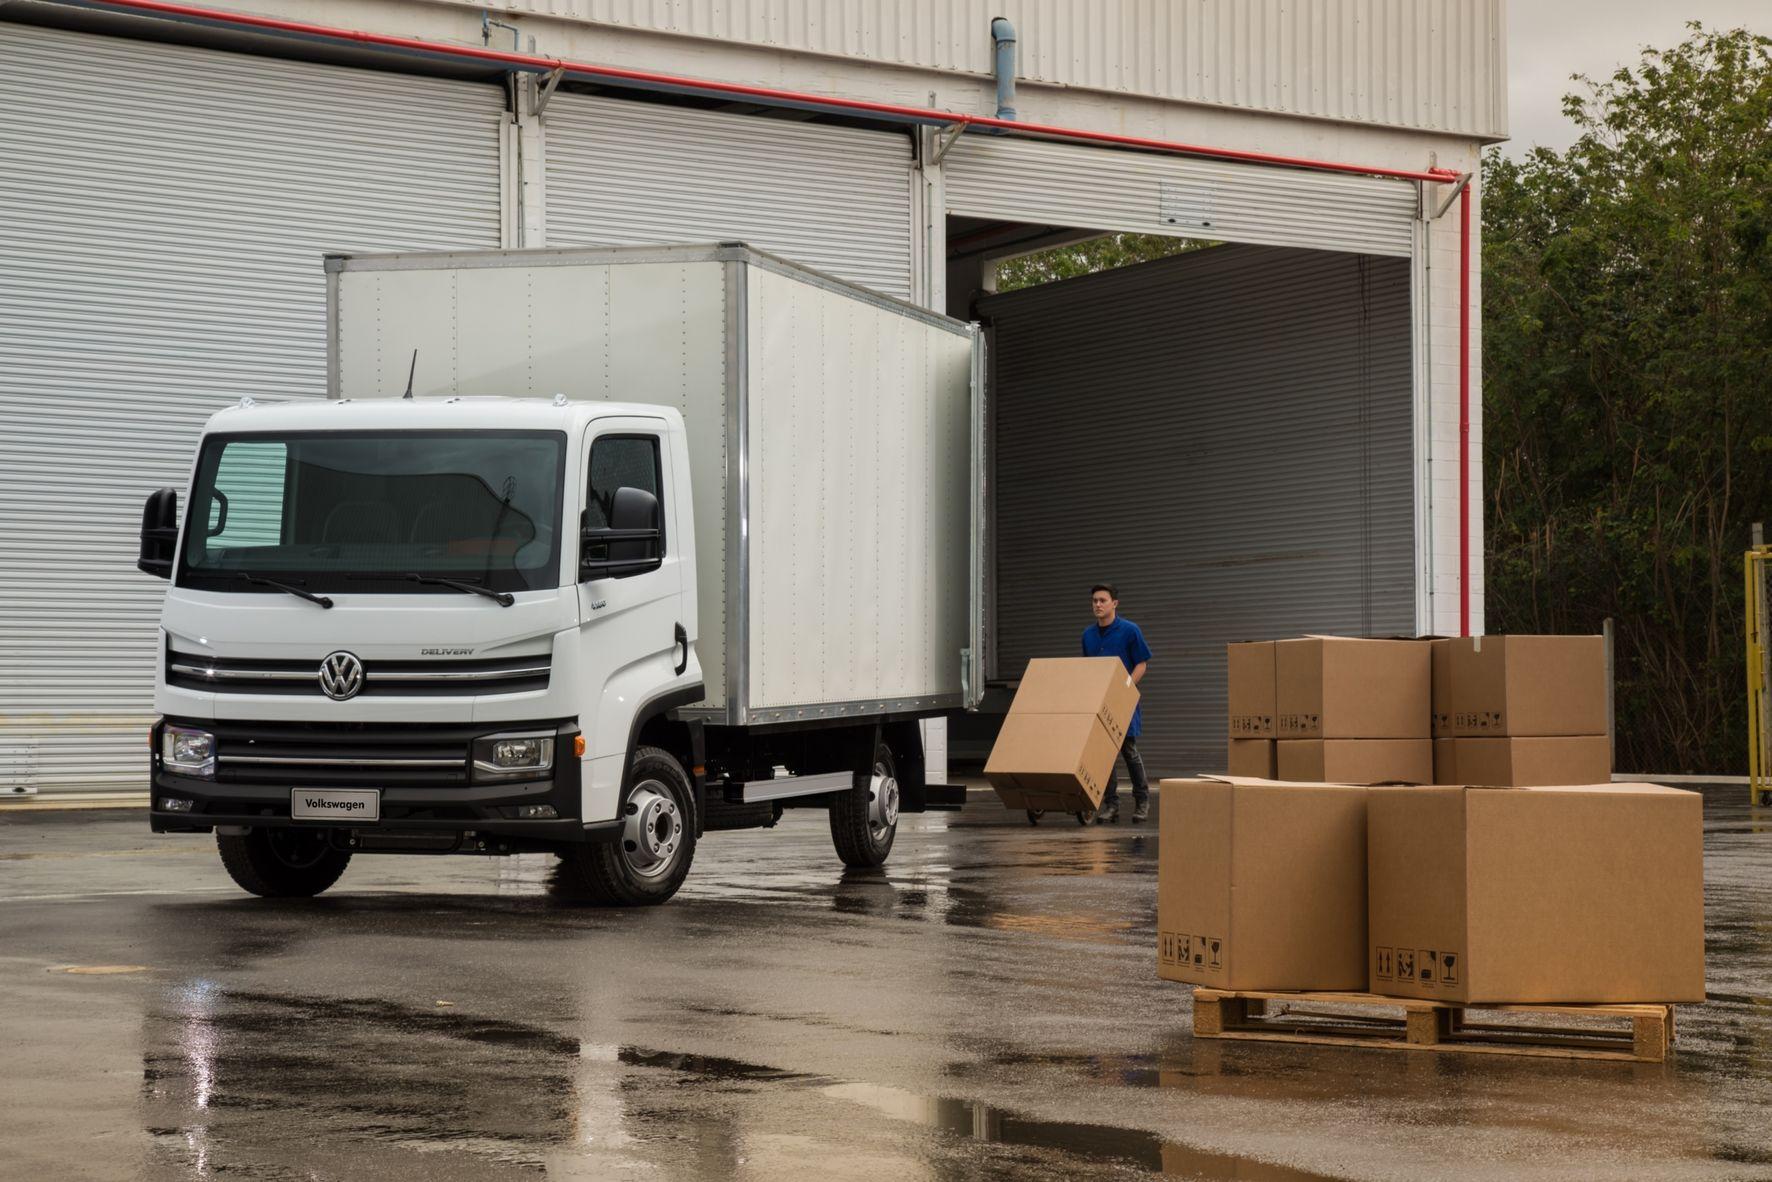 Volkswagen caminhões começa a distribuir para a rede o Delivery Express